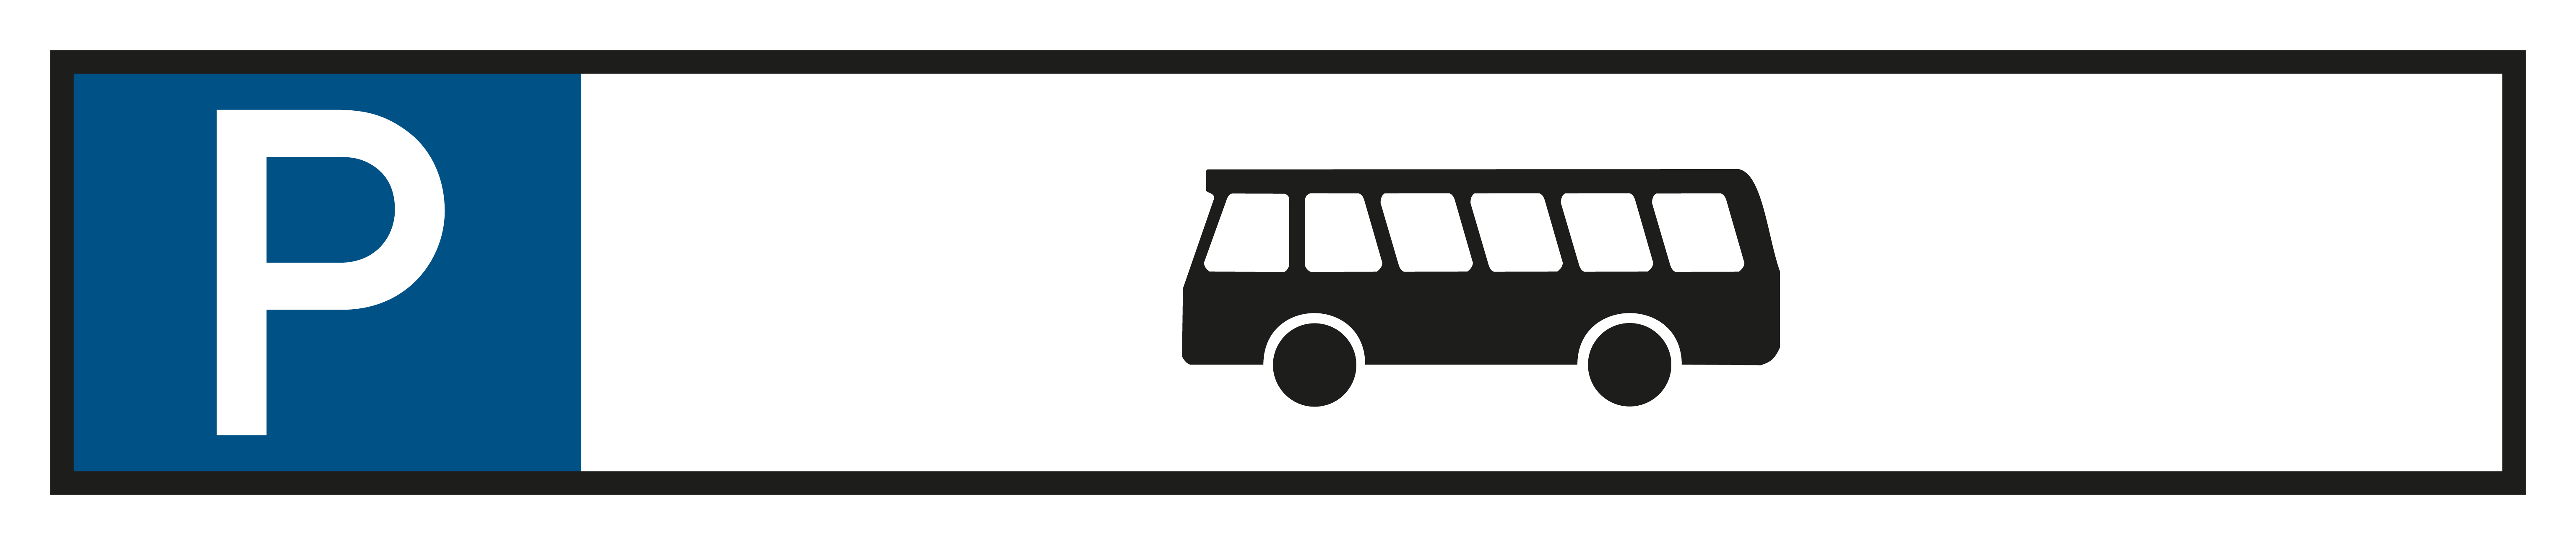 Parkplatzschild - Nur für Busse  - Folie Selbstklebend  - 11 x 52 cm